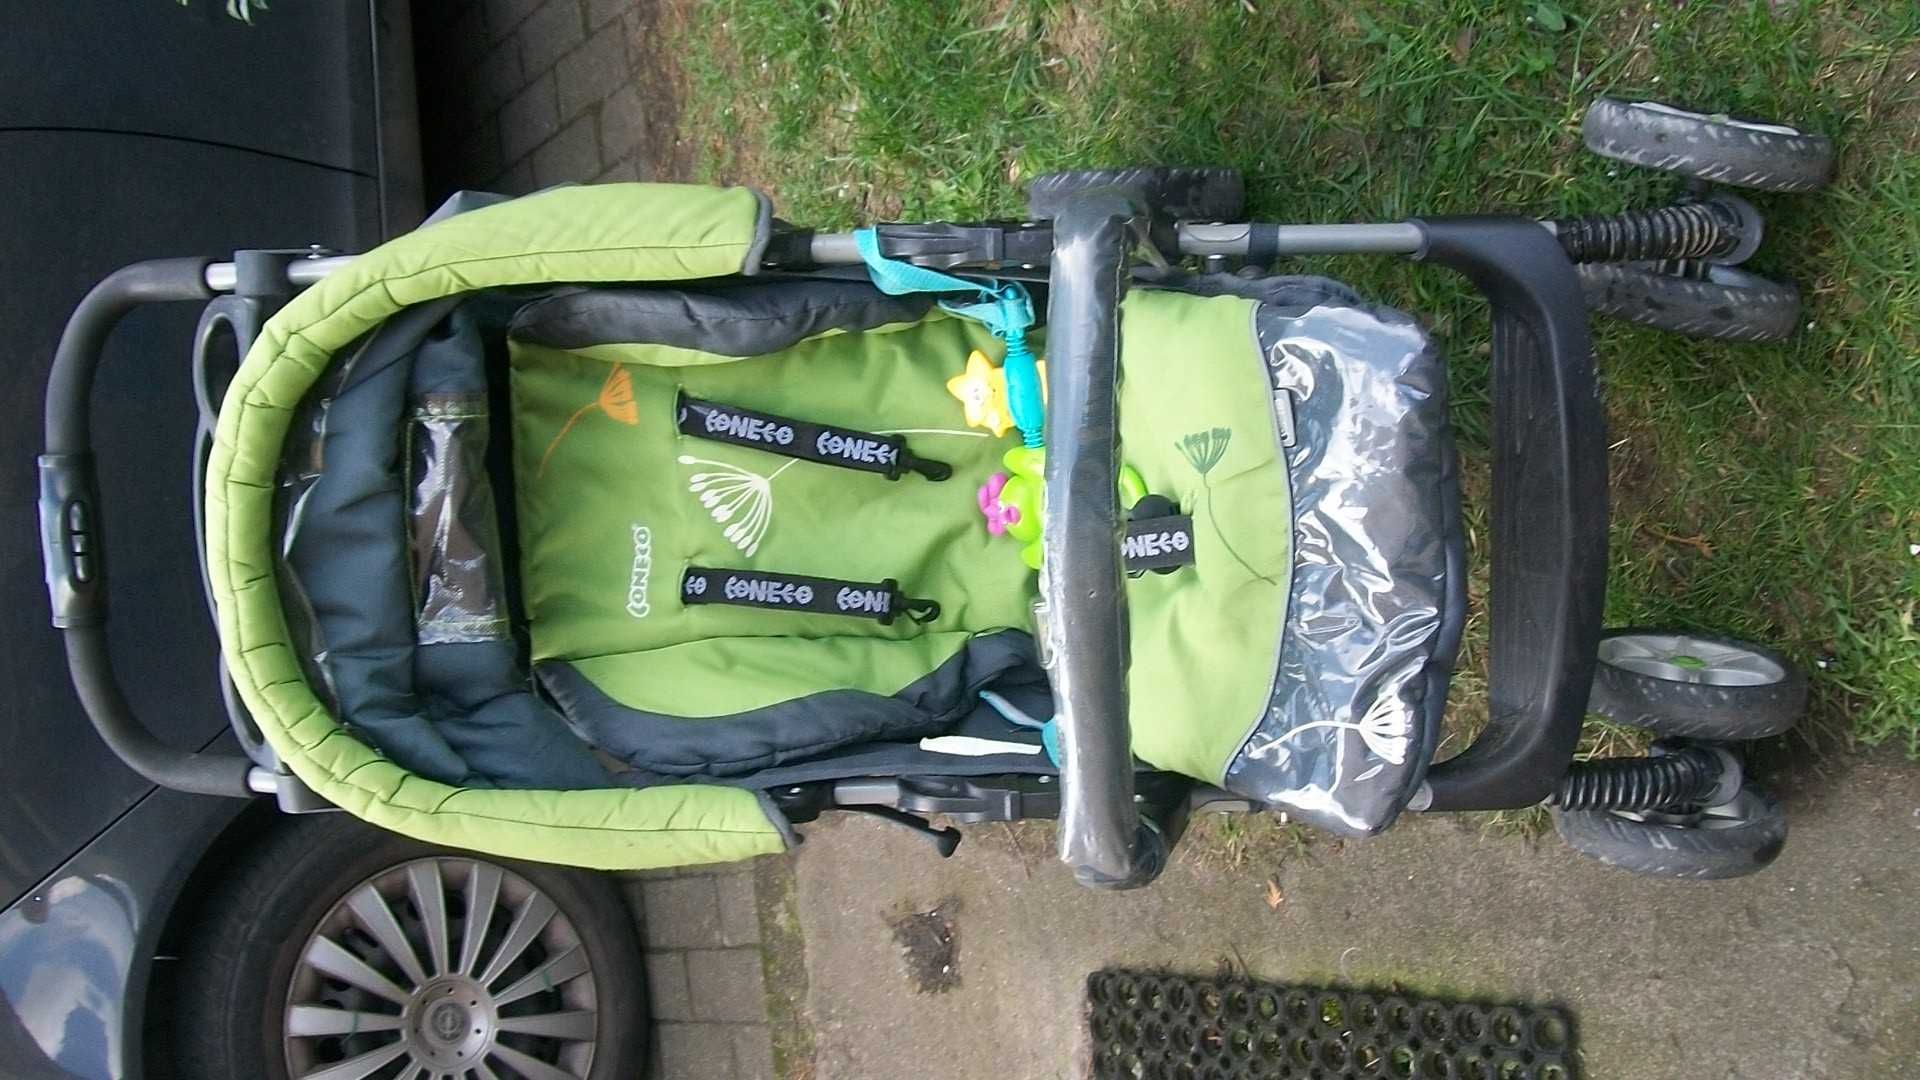 wózek dla dziecka 5 rodzaji spacerówki